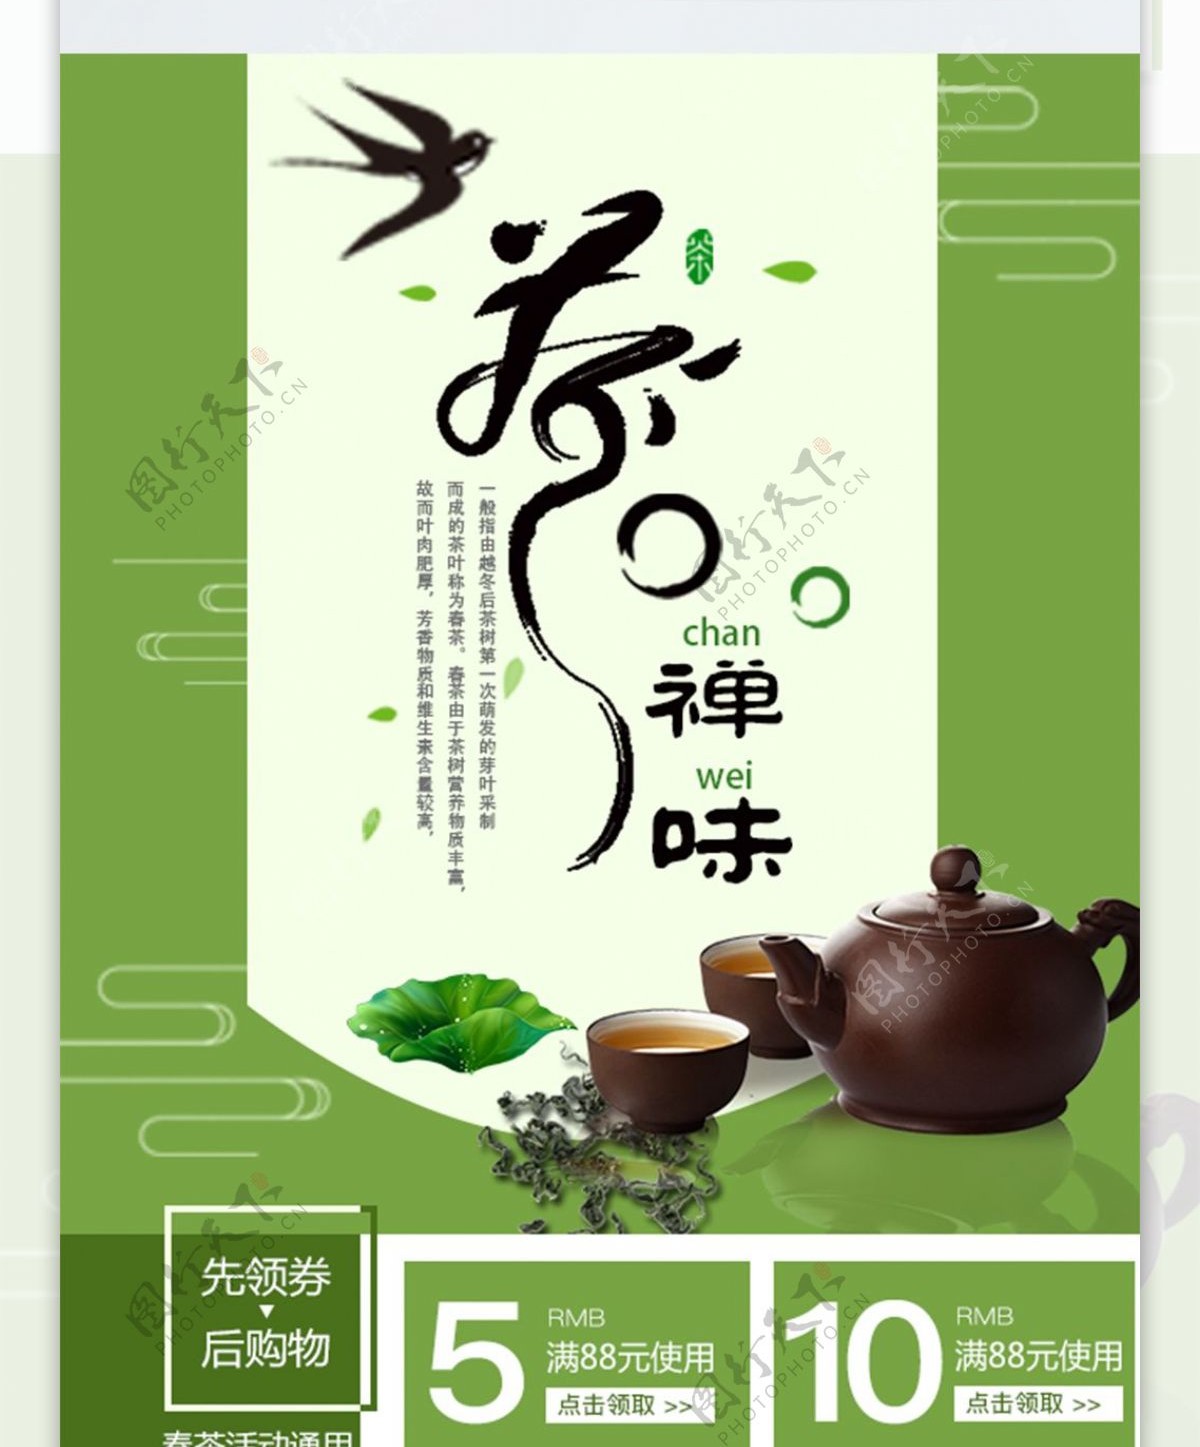 绿色茶文化春茶淘宝移动端首页